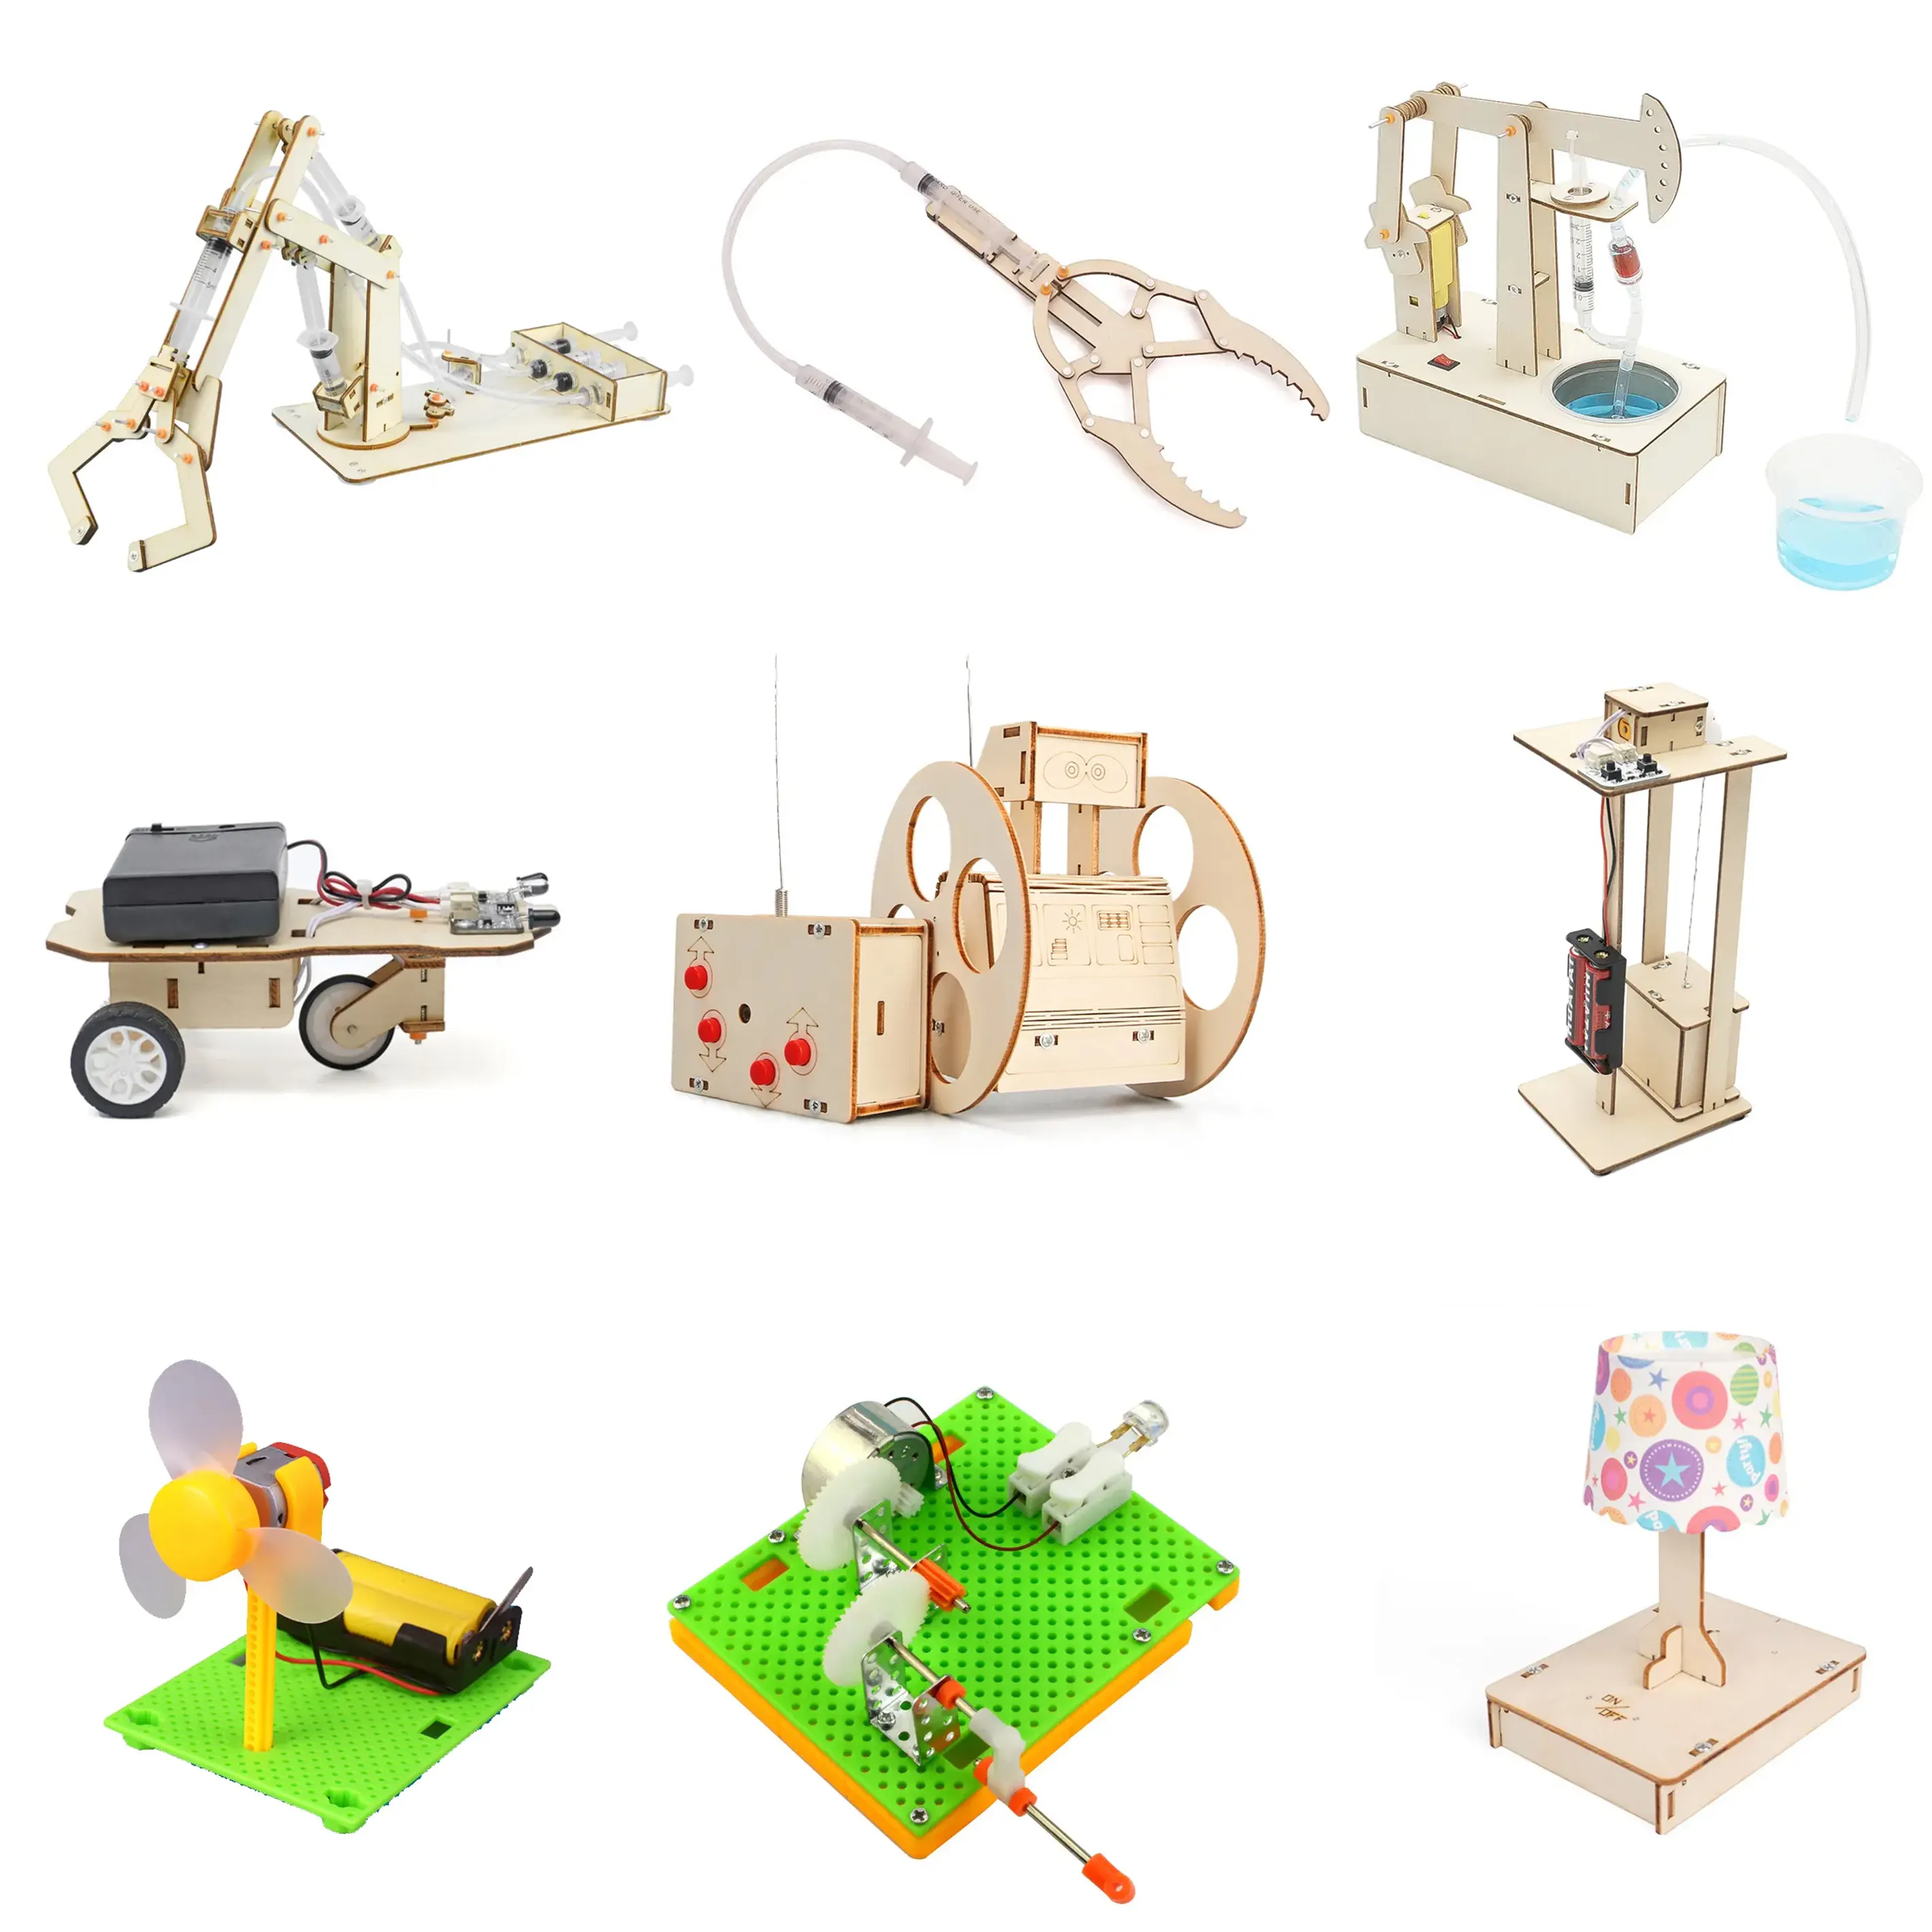 DIY STEM Escuela Secundaria juguete educativo ciencia montaje rompecabezas de madera kits física juguetes para niños